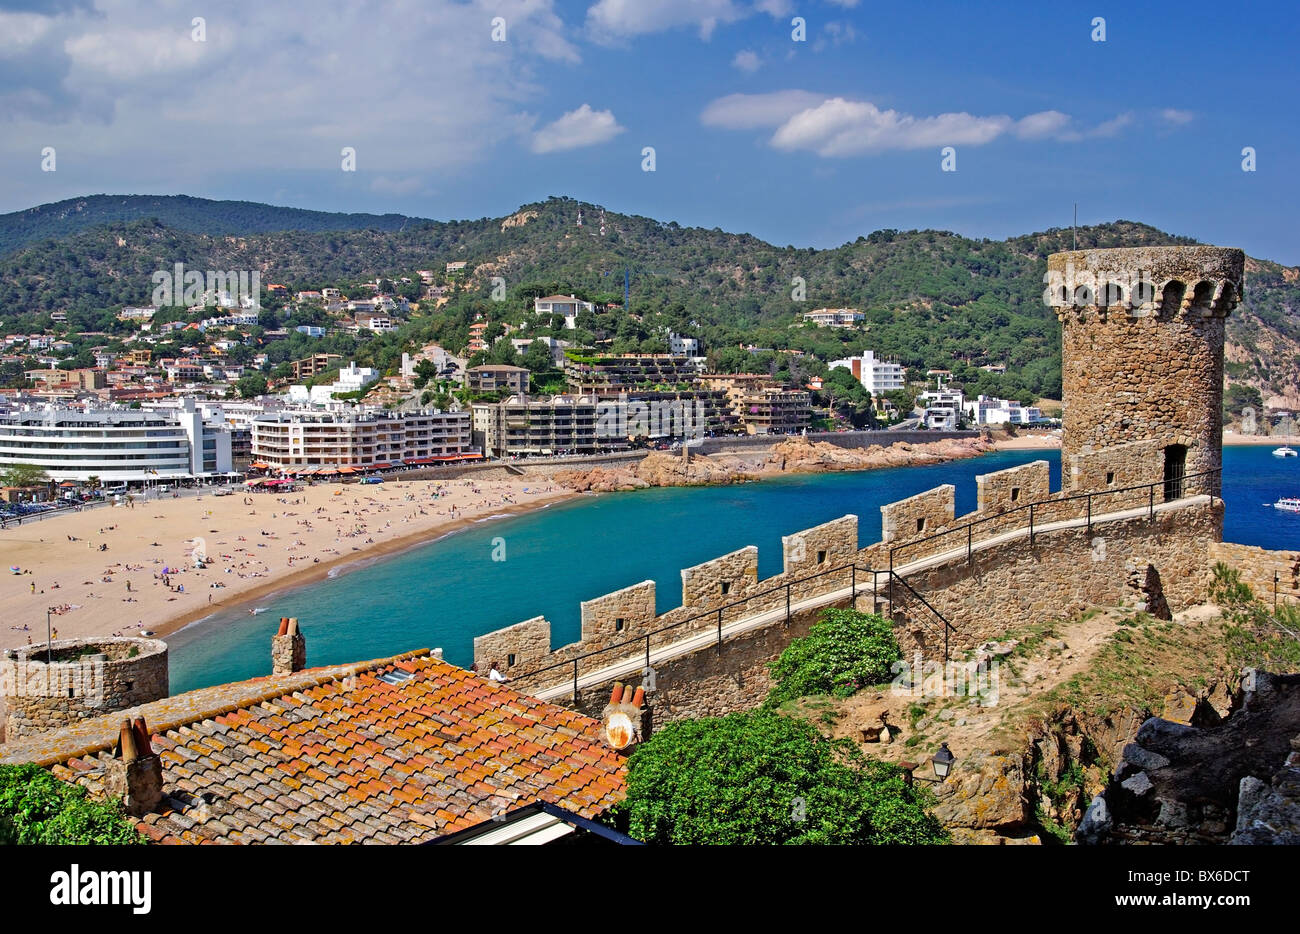 Stadtbild von Tossa de Mar, Costa Brava, Spanien. Mehr in meiner Galerie. Stockfoto